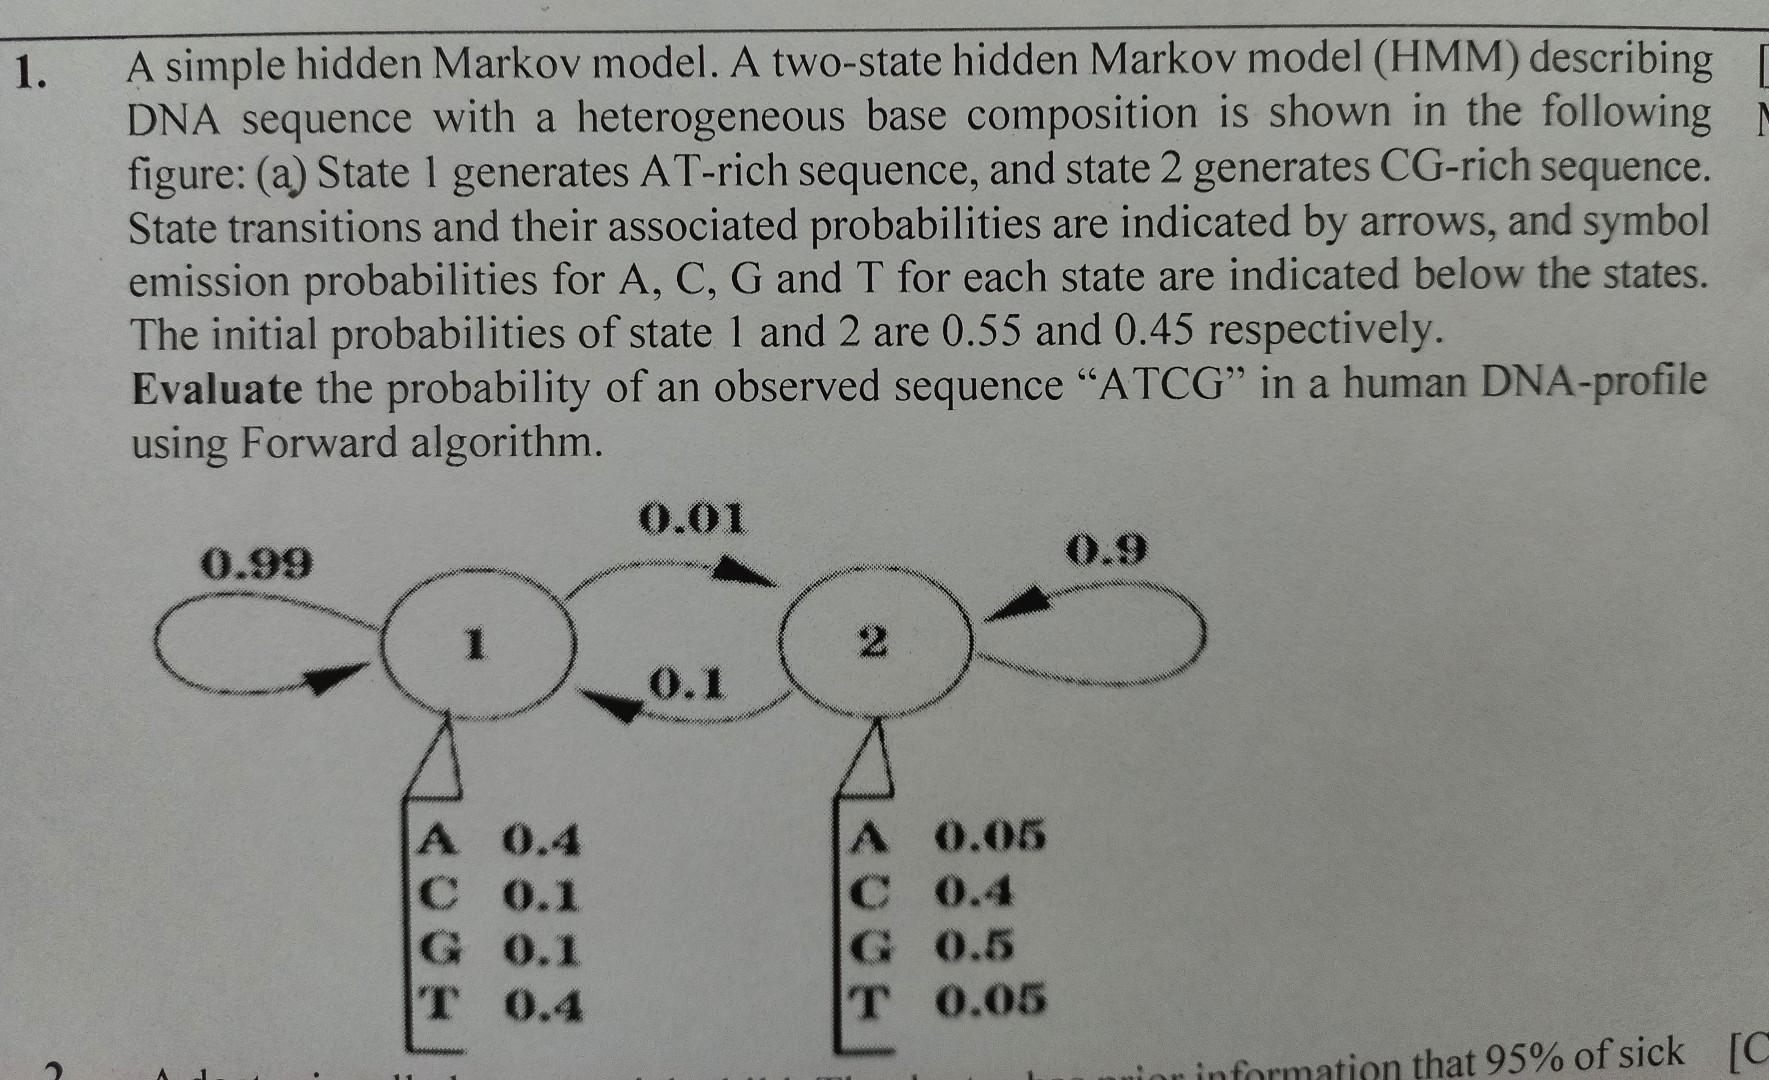 1. A simple hidden Markov model. A two-state hidden Markov model (HMM) describing DNA sequence with a